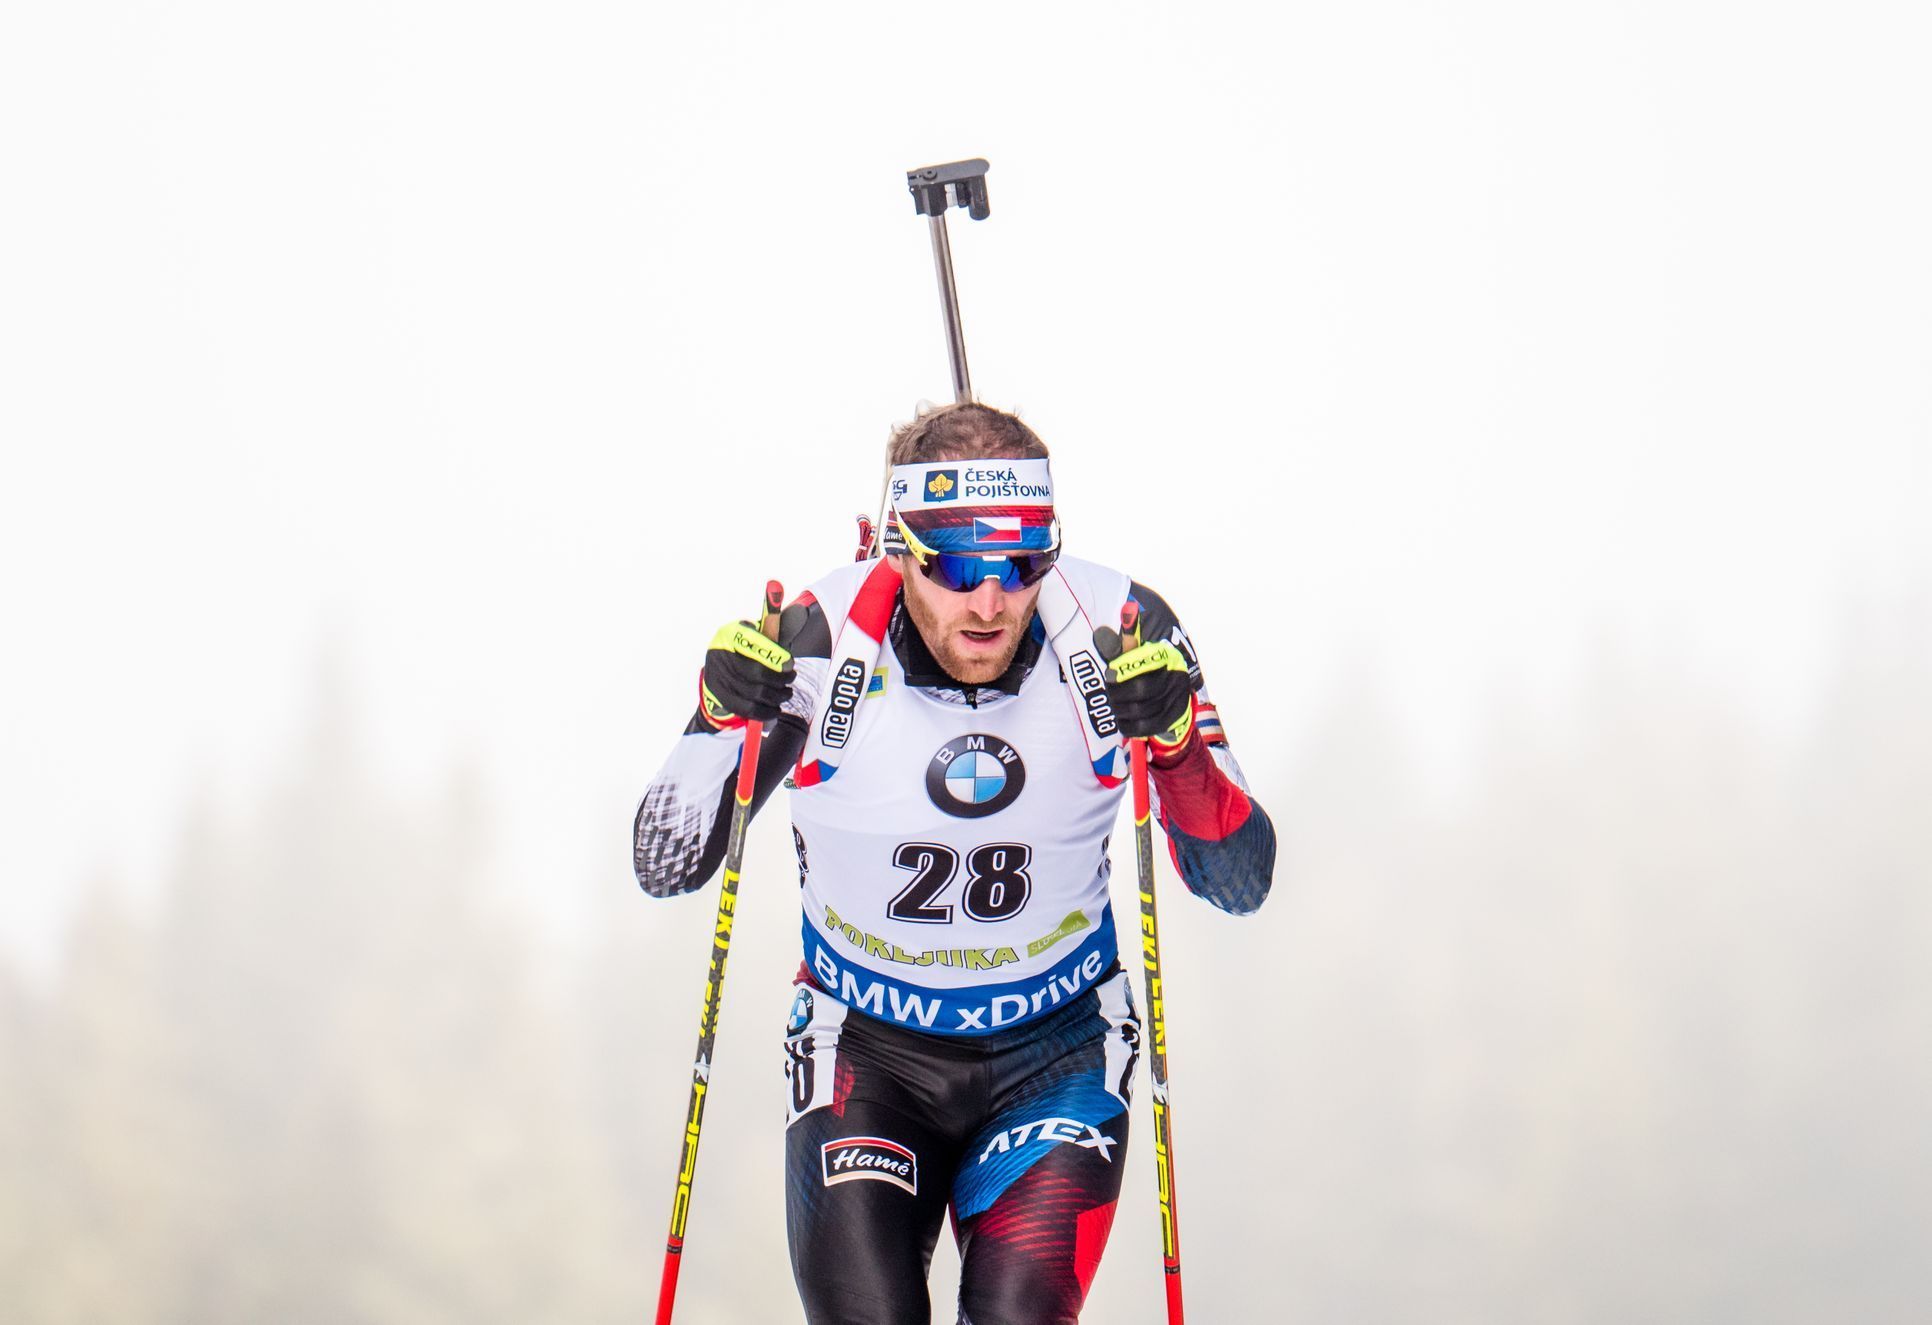 biatlon, SP 2018/2019, Pokljuka, vytrvalostní závod mužů, Michal Šlesingr